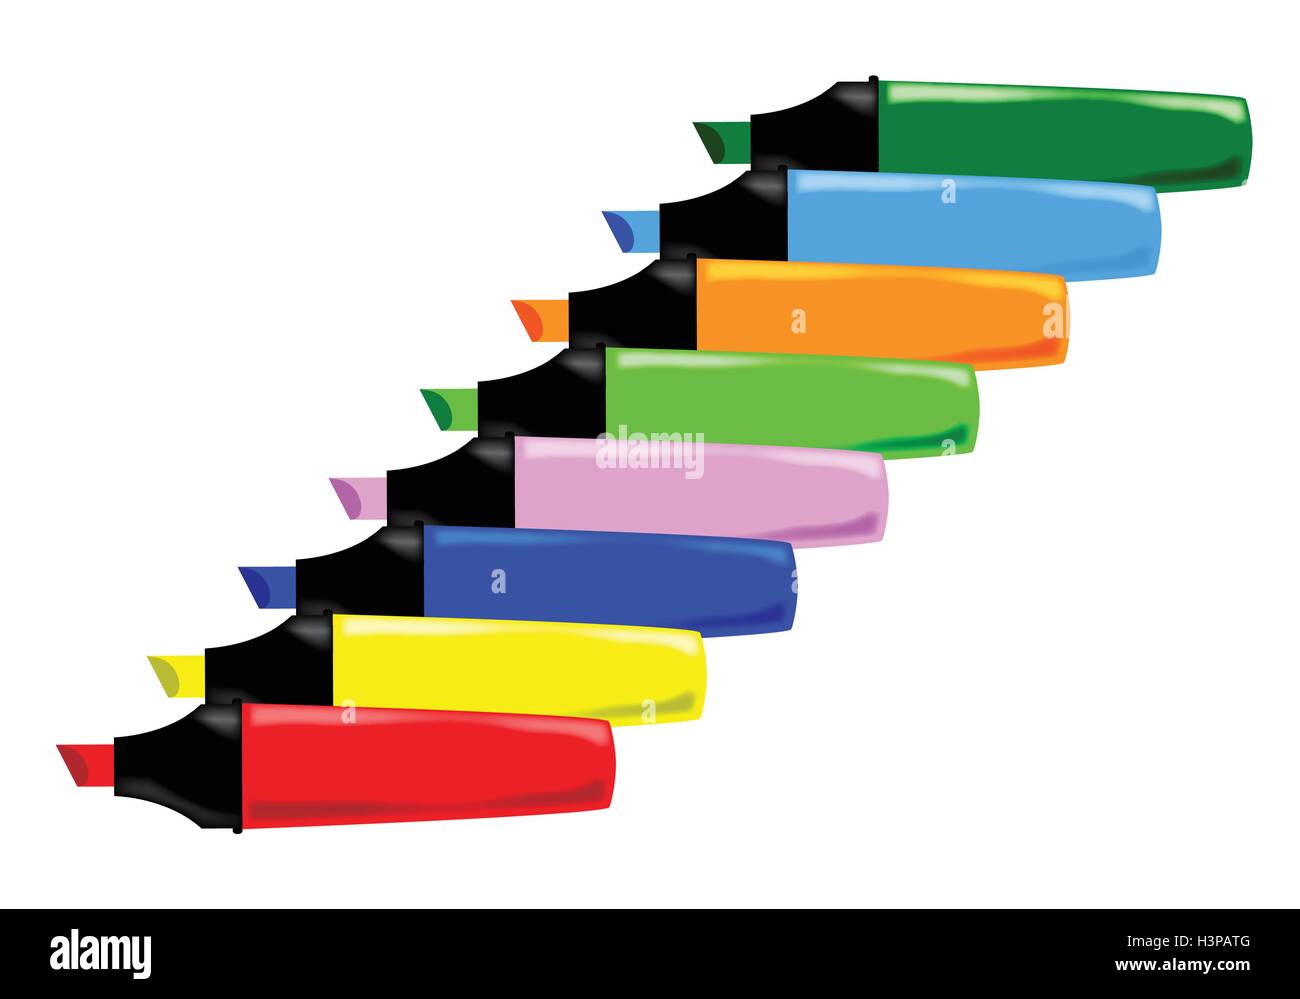 Una raccolta di 8 diversi colori evidenziatori disposti su uno sfondo bianco Illustrazione Vettoriale